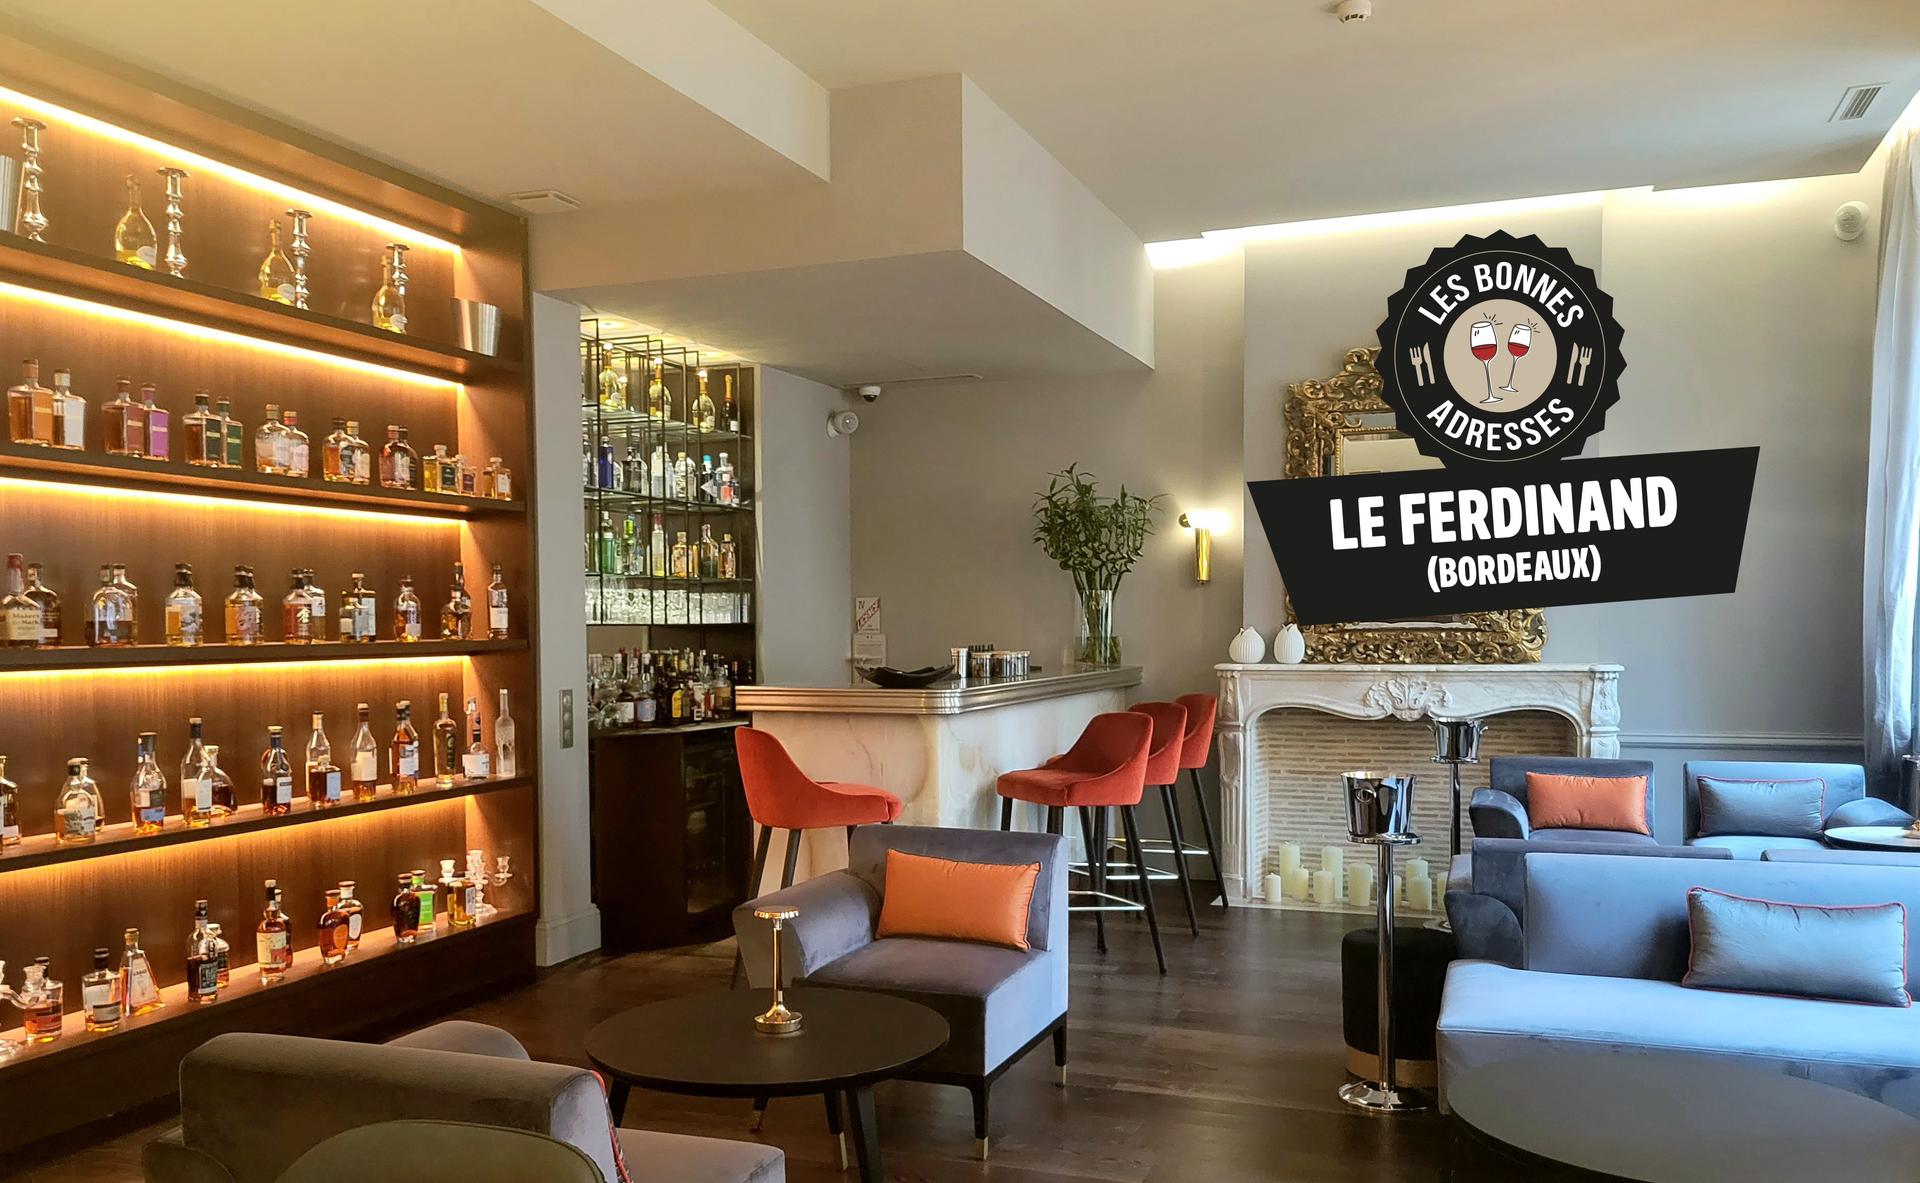 Le Ferdinand : le bar à spiritueux de l’hôtel Villas Foch à Bordeaux